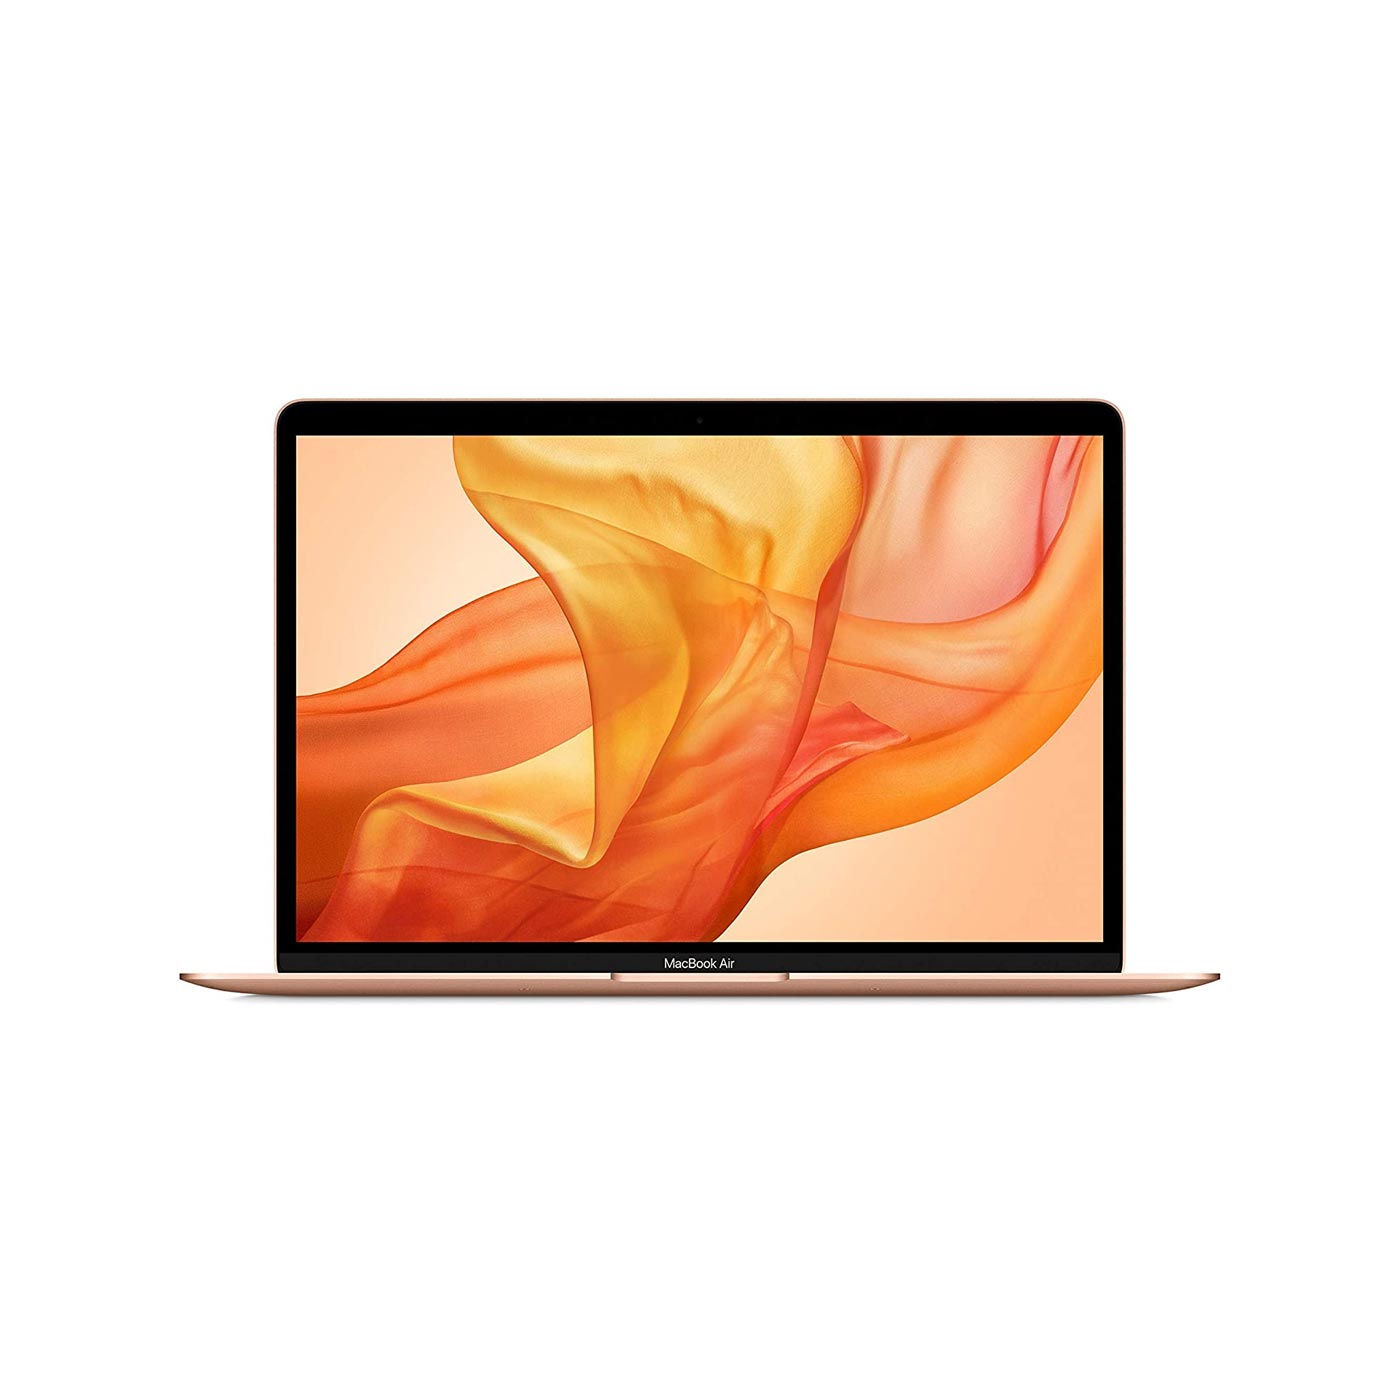 MacBook Air 13-inch, 8GB RAM 256GB SSD Storage - Gold (2020 model)